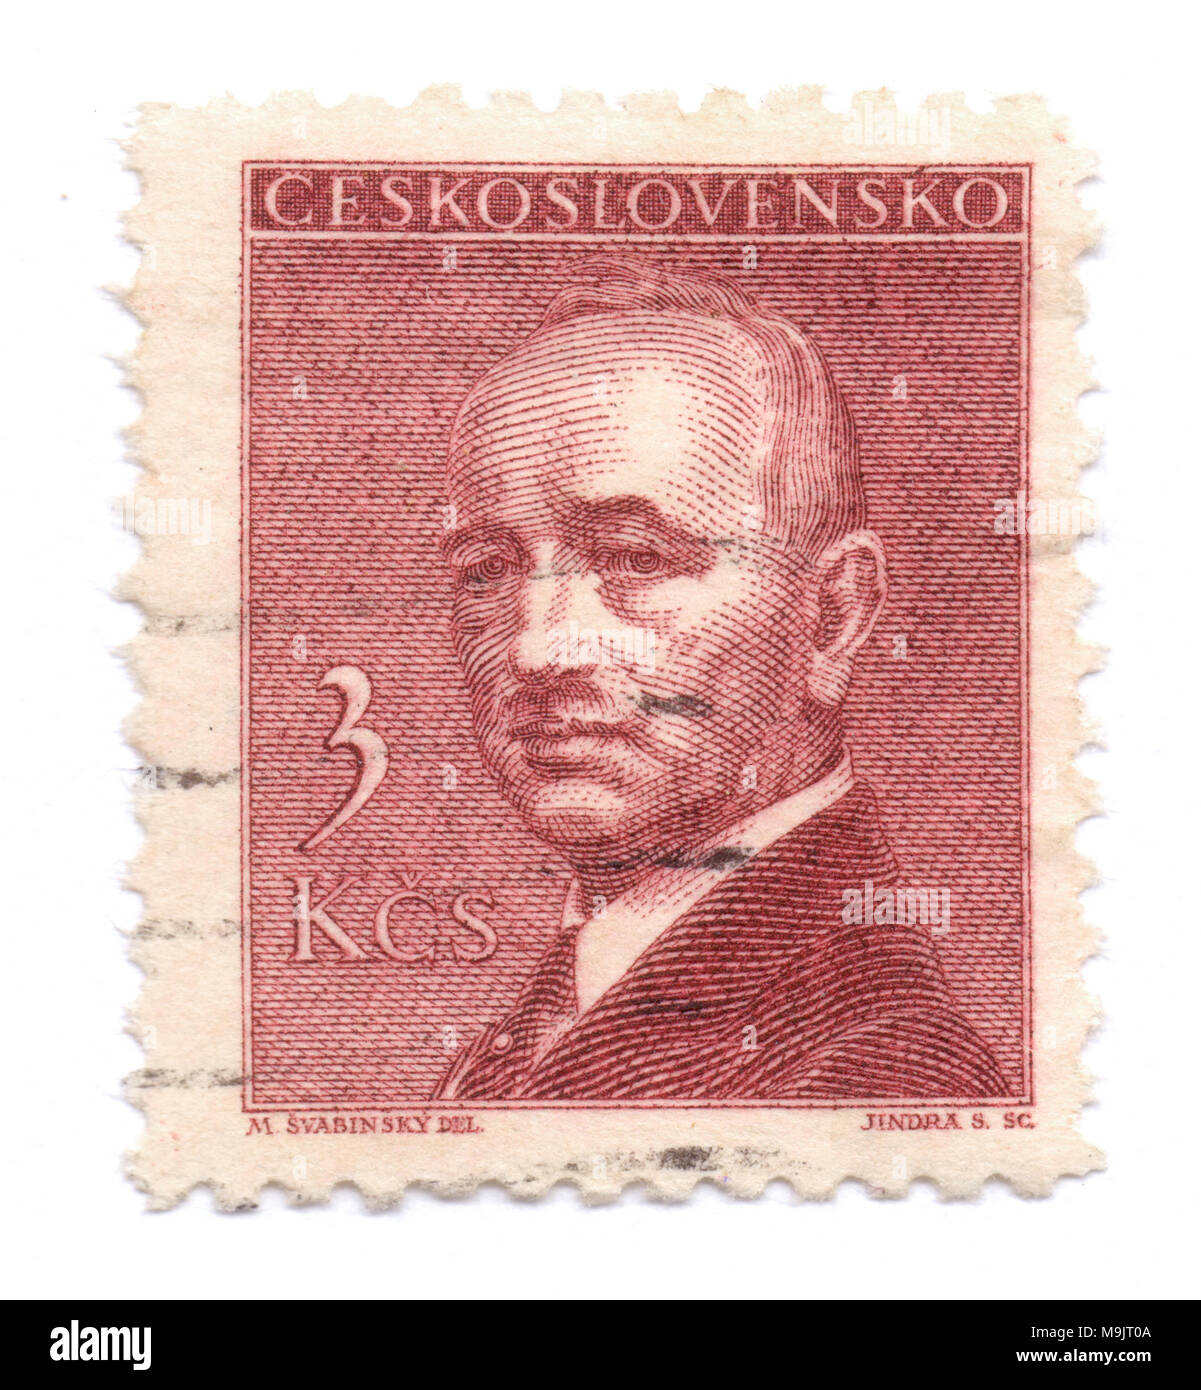 Edvard Beneš, deuxième président tchécoslovaque sur timbre-poste, imprimé à Prague, en Tchécoslovaquie (aujourd'hui République tchèque) en 1946, la valeur 3 couronnes. Banque D'Images